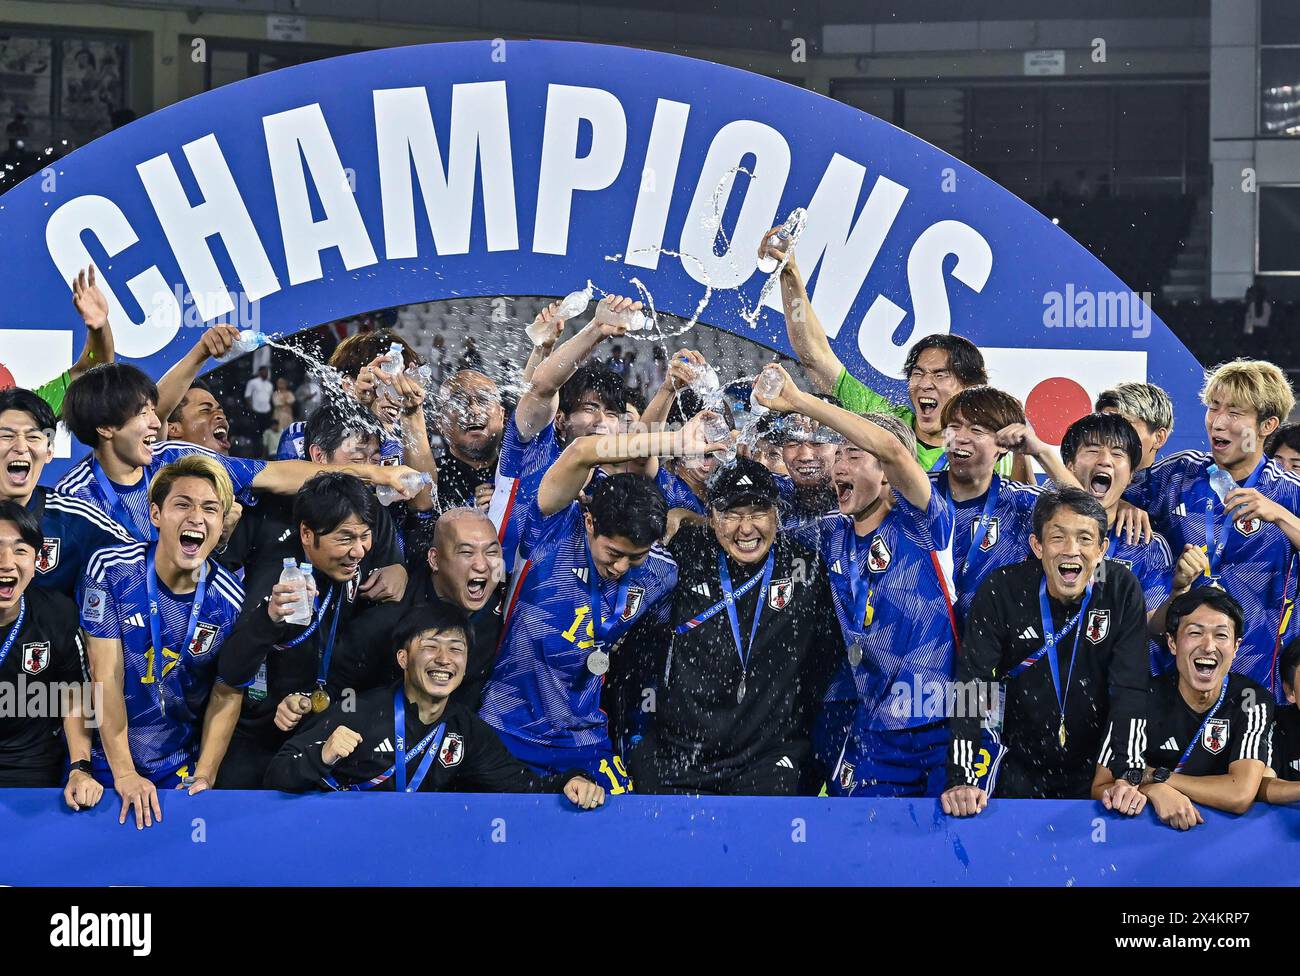 Doha, Katar. Mai 2024. Das Team Japan feiert während der Preisverleihung nach dem letzten Spiel zwischen Japan und Usbekistan beim AFC U23 Asian Cup Qatar 2024 Fußballturnier in Doha, Katar, am 3. Mai 2024. Quelle: Nikku/Xinhua/Alamy Live News Stockfoto